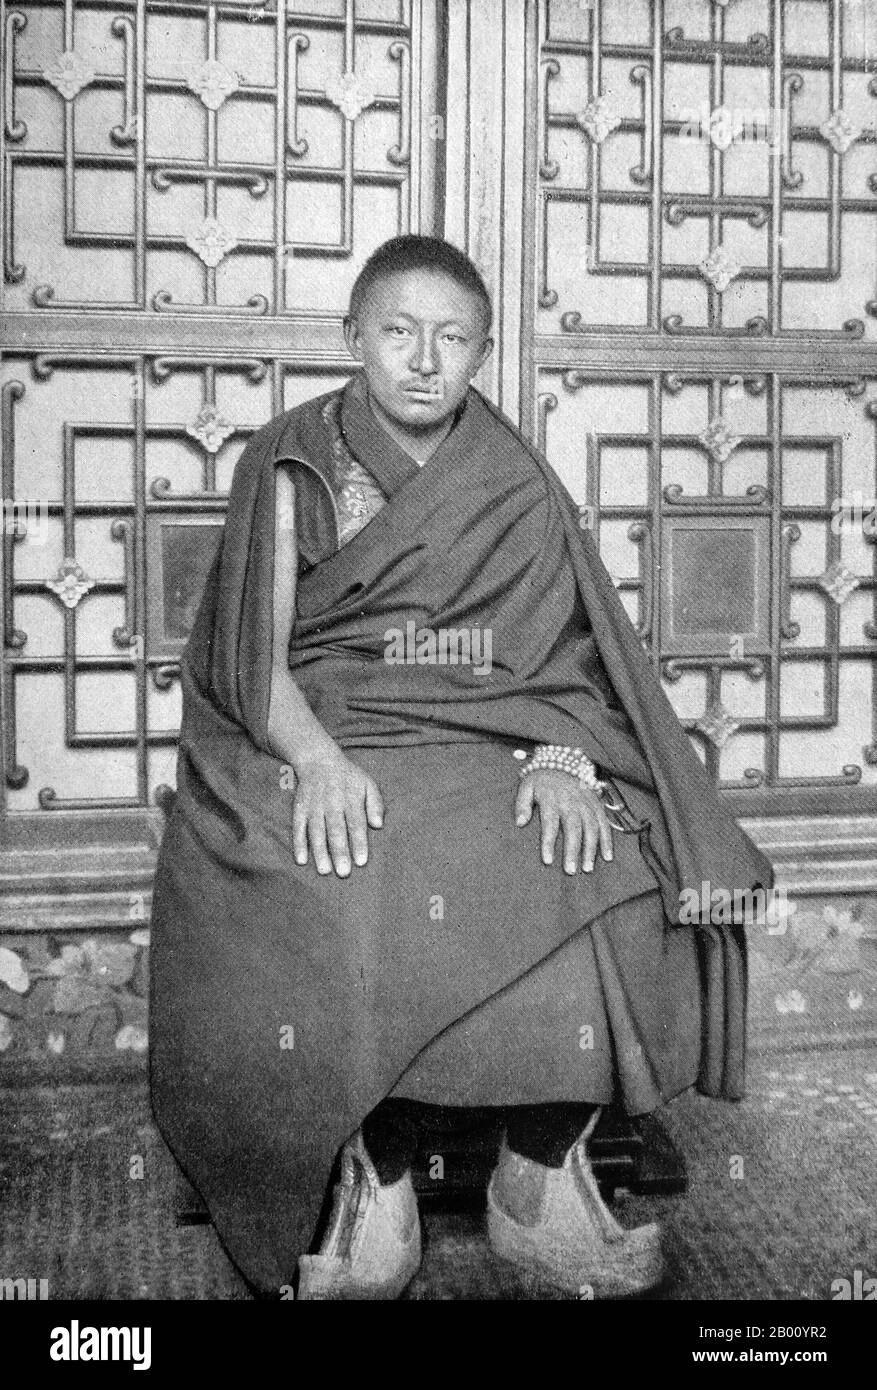 China/Tibet: Thubten Chokyi Nyima, der Panchen Lama von 9th (1883–1937). Foto von Sven Hedin (1865-1952), 1907. Der Panchen Lama ist der höchste Lama nach dem Dalai Lama in der Gelugpa (DGE-lugs-pa) Sekte des tibetischen Buddhismus (die Sekte, die Westtibet vom 16th. Jahrhundert bis zur Einführung der chinesischen Souveränität im Jahr 1951 kontrollierte). Die aufeinander folgenden Panchen Lamas bilden eine Tulku Reinkarnationslinie, die angeblich die Inkarnationen von Amitabha Buddha sind. Der Name, was "großer Gelehrter" bedeutet, ist eine tibetische Kontraktion des Sanskrit pandita (Gelehrter) und des tibetischen Chenpo (groß). Stockfoto